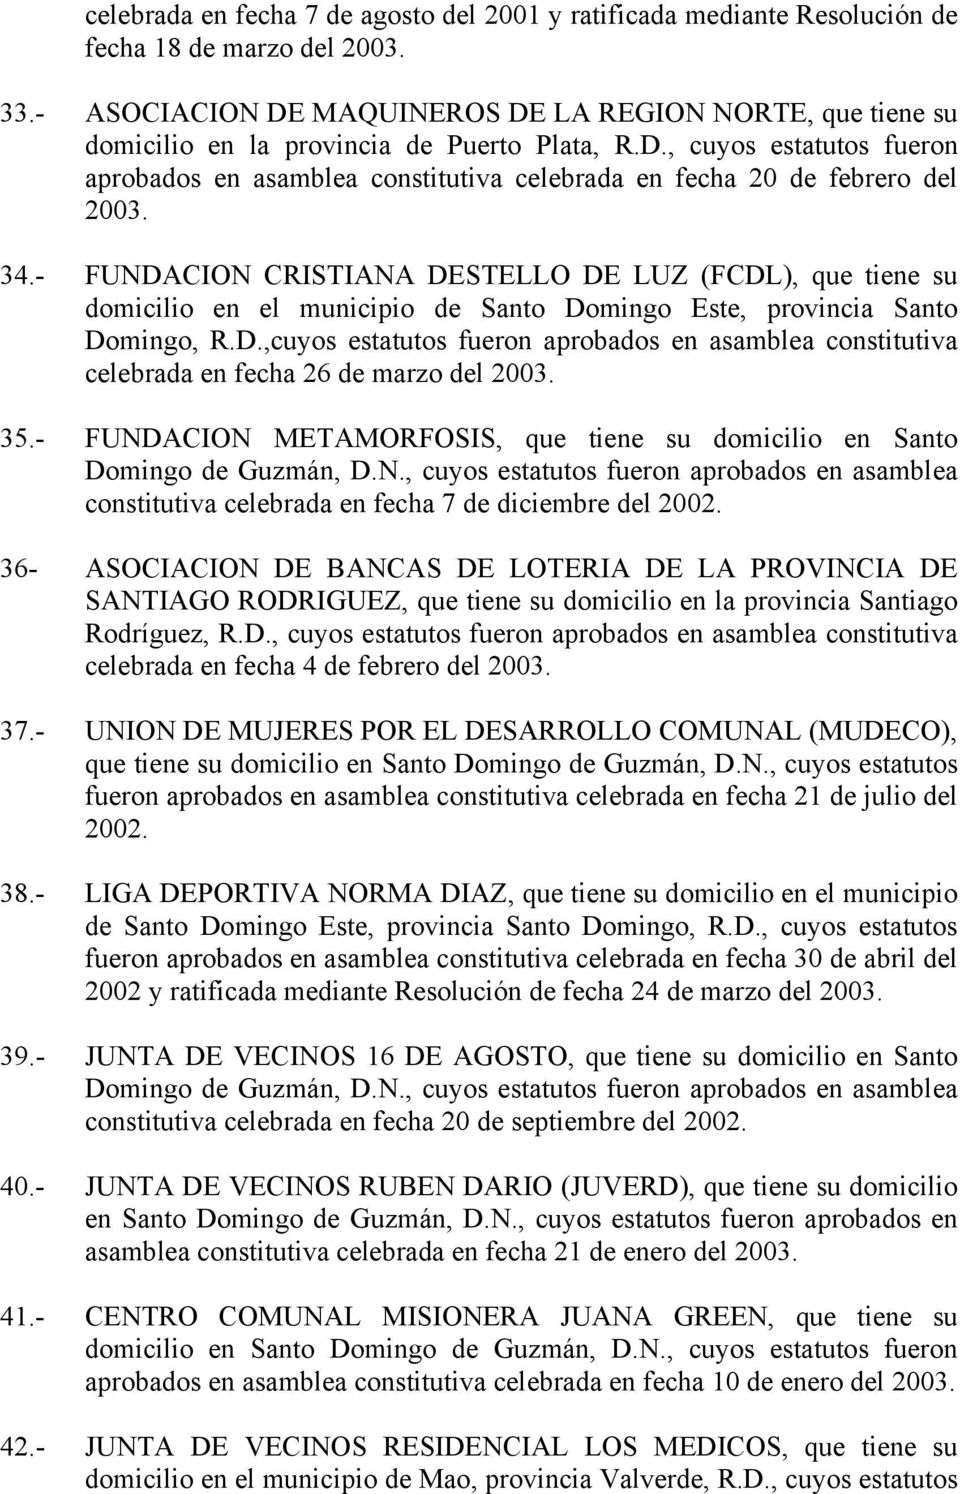 34.- FUNDACION CRISTIANA DESTELLO DE LUZ (FCDL), que tiene su domicilio en el municipio de Santo Domingo Este, provincia Santo Domingo, R.D.,cuyos estatutos fueron aprobados en asamblea constitutiva celebrada en fecha 26 de marzo del 2003.